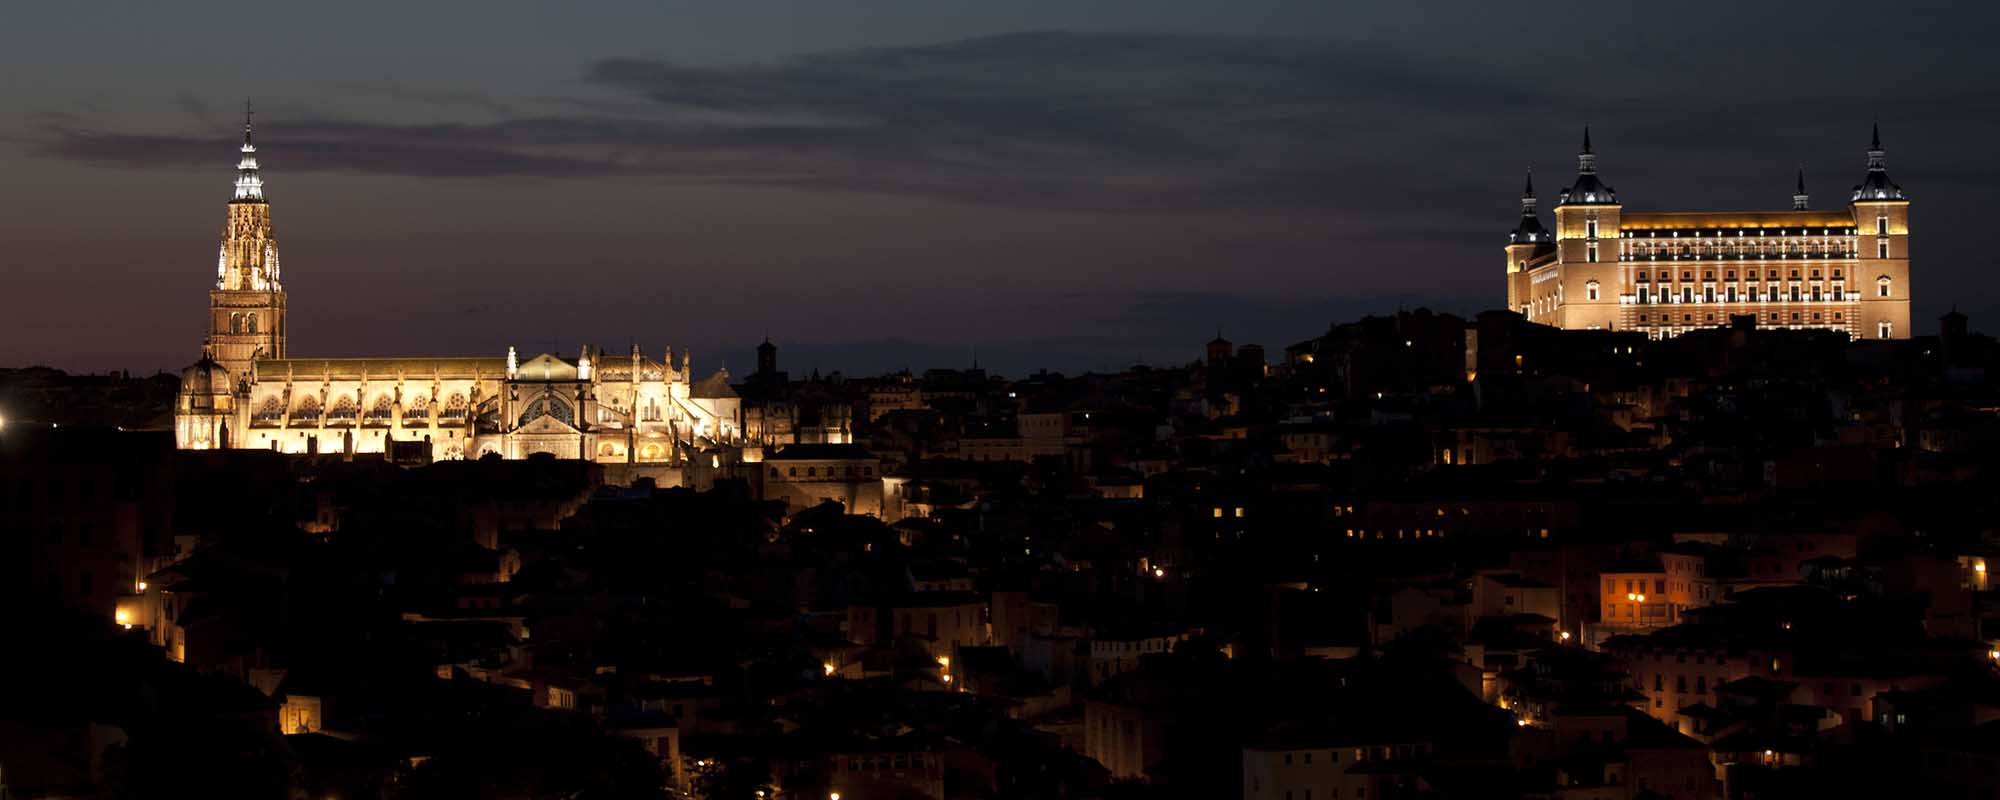 Panorámica nocturna más bella del mundo - Toledo